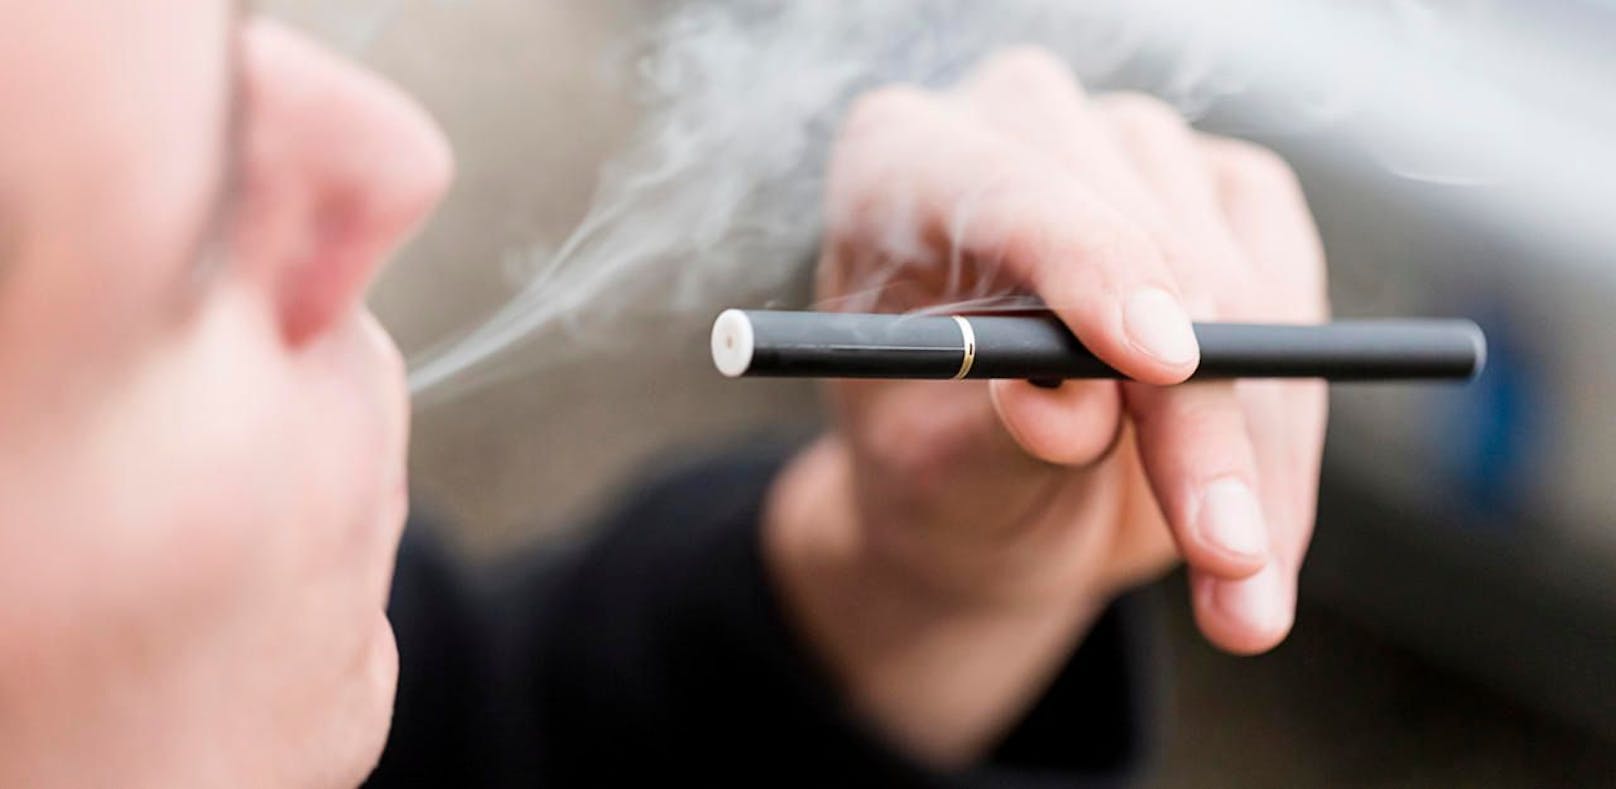 Wer die gratis E-Zigaretten bekomme, sollen die Kommunen entscheiden. Diese könnten das Programm mit lokalen Maßnahmen ergänzen. (Symbolbild)